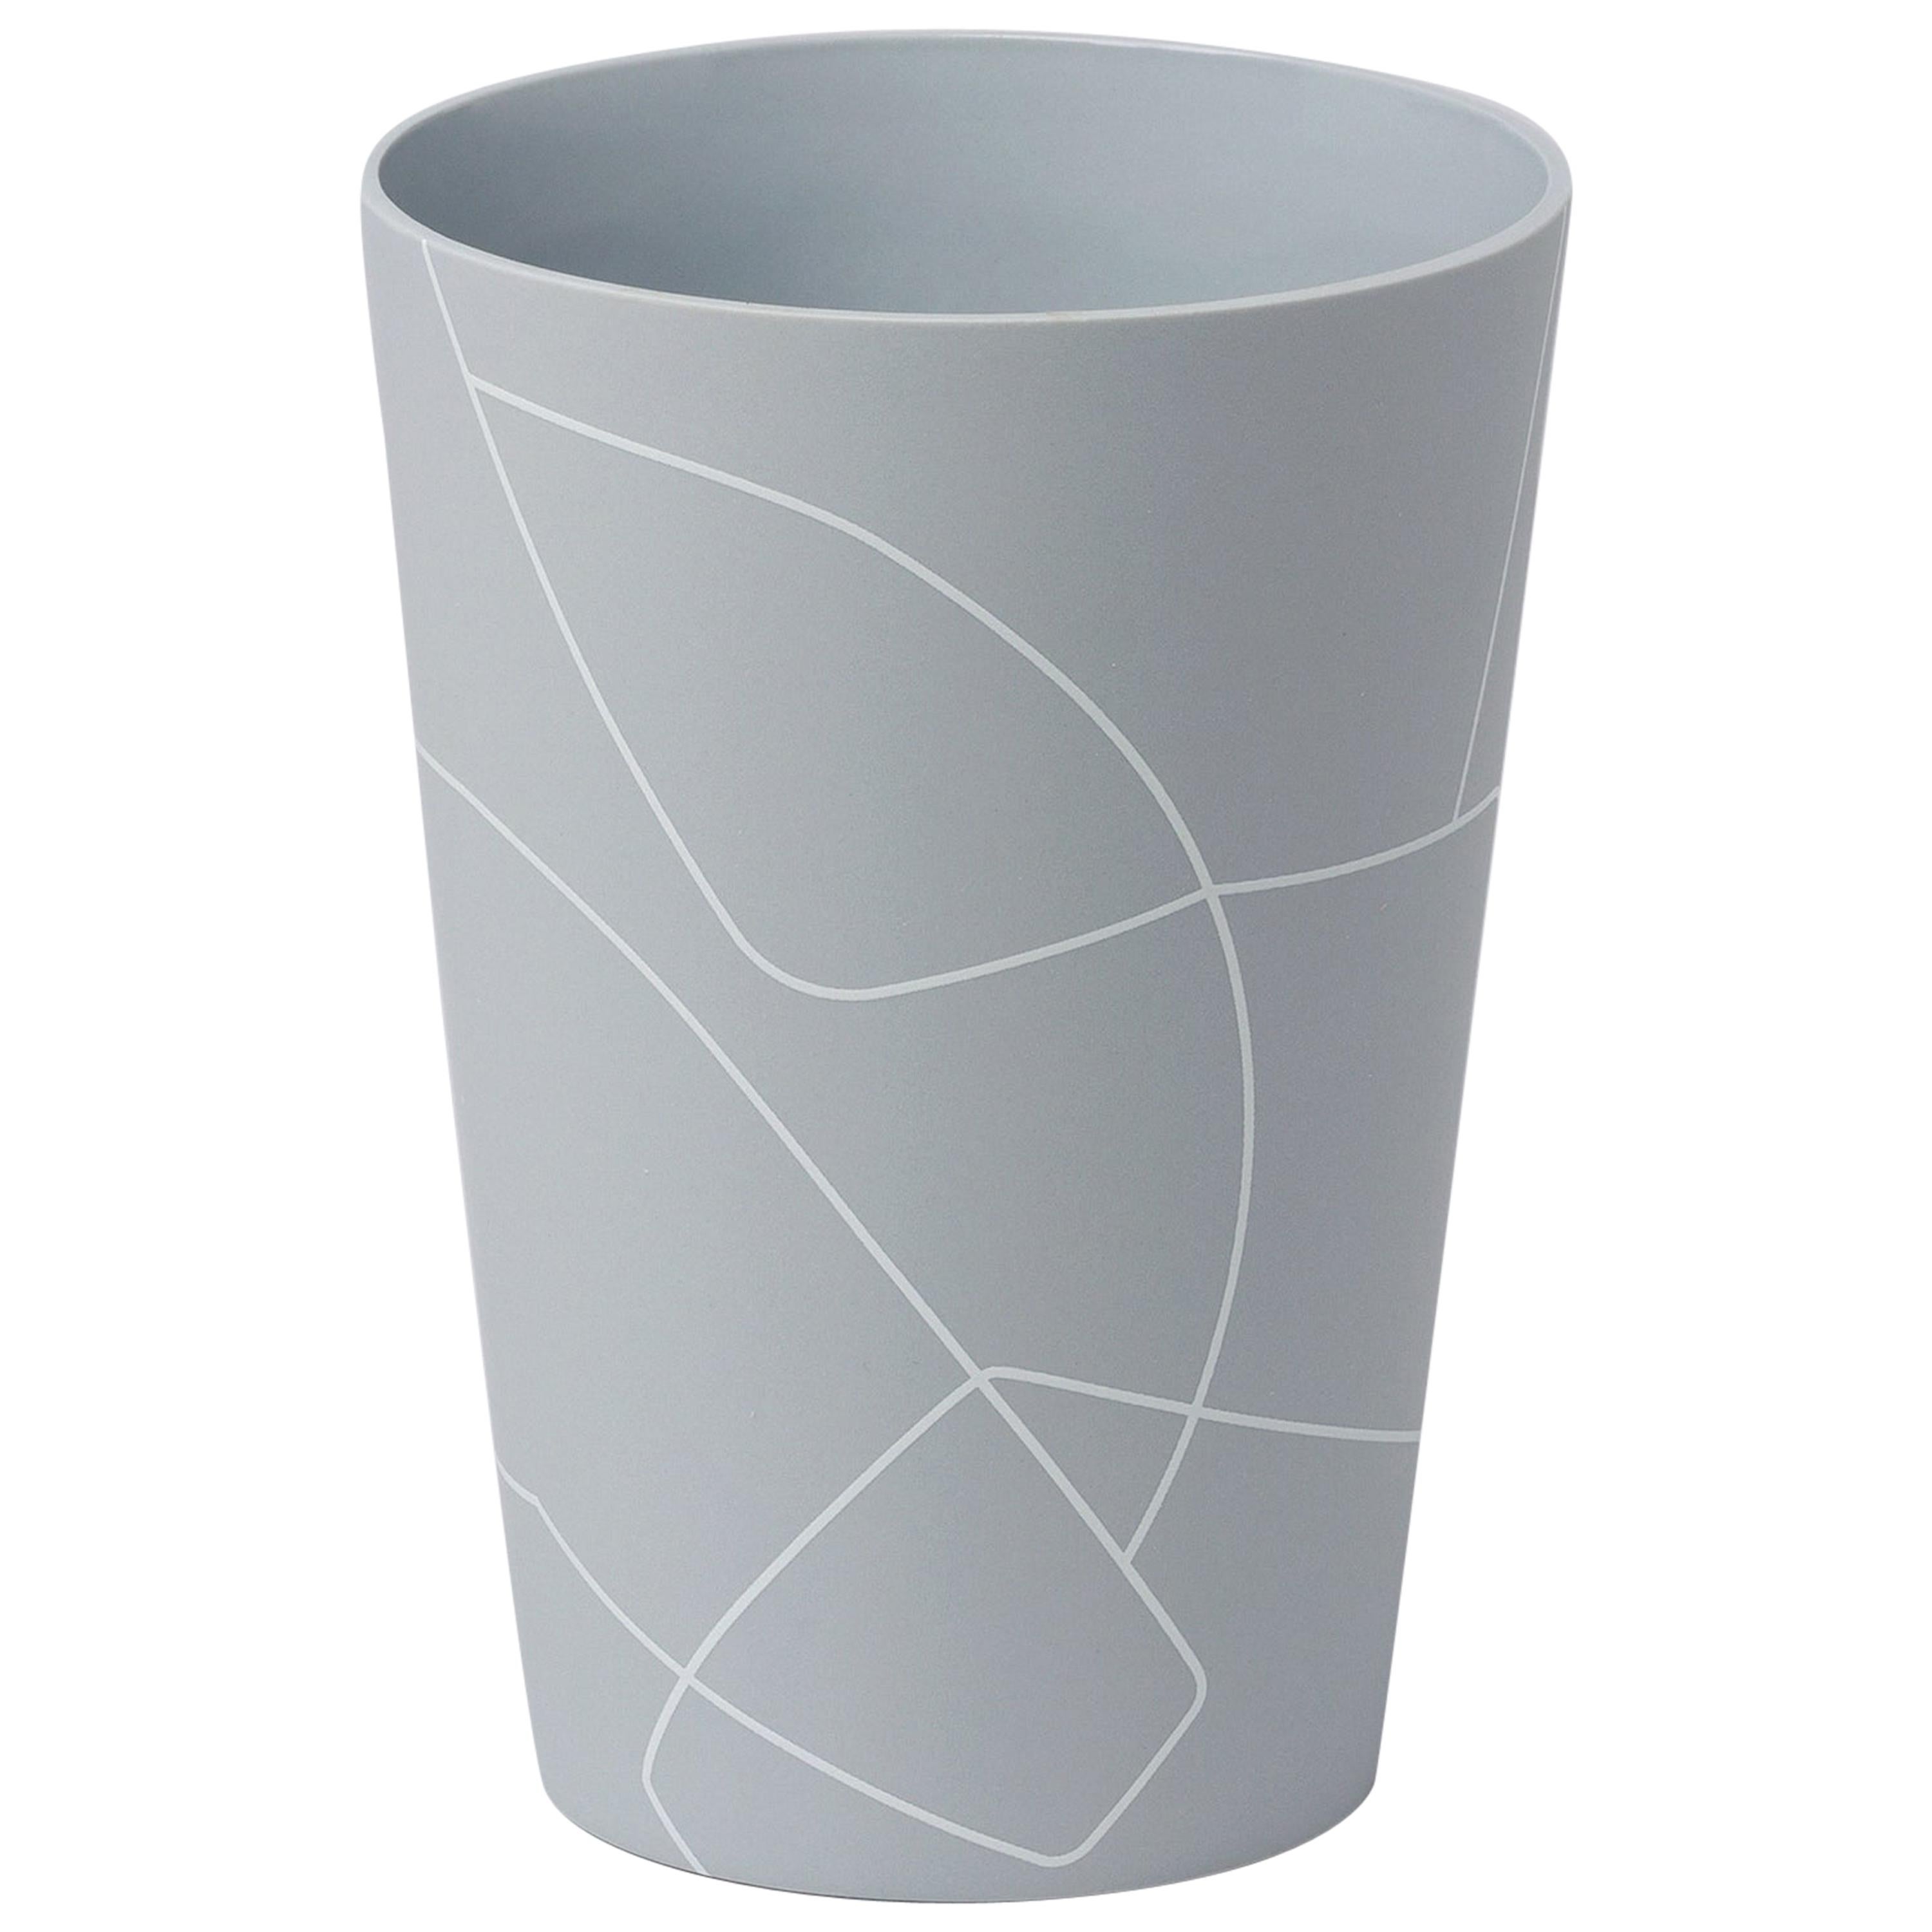 Petit vase conique inversé en céramique gris mat et moyen avec motif de lignes graphiques